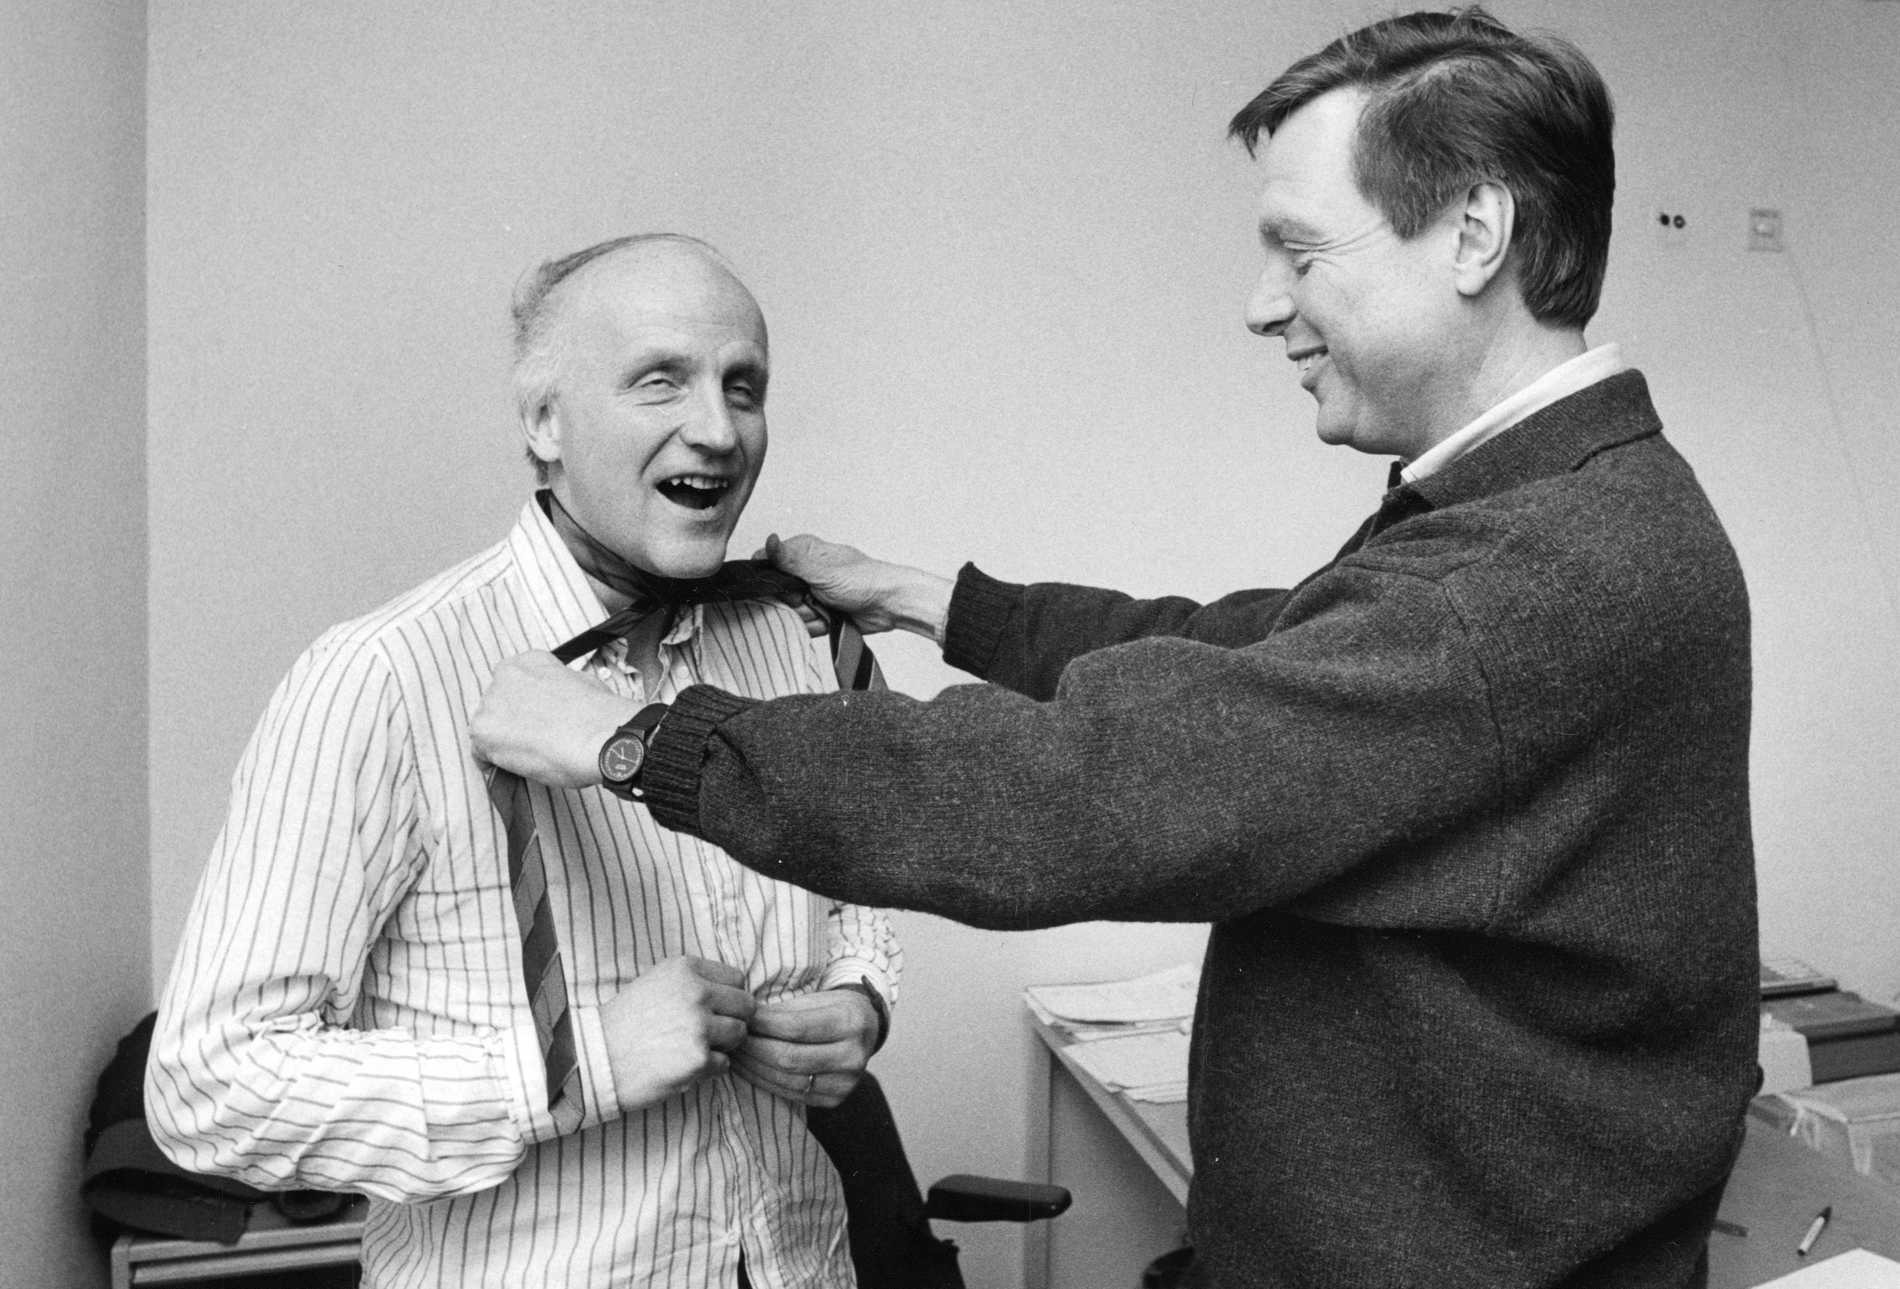 I colleghi Arne Hegerfors e Tommy Engstrand 1988.